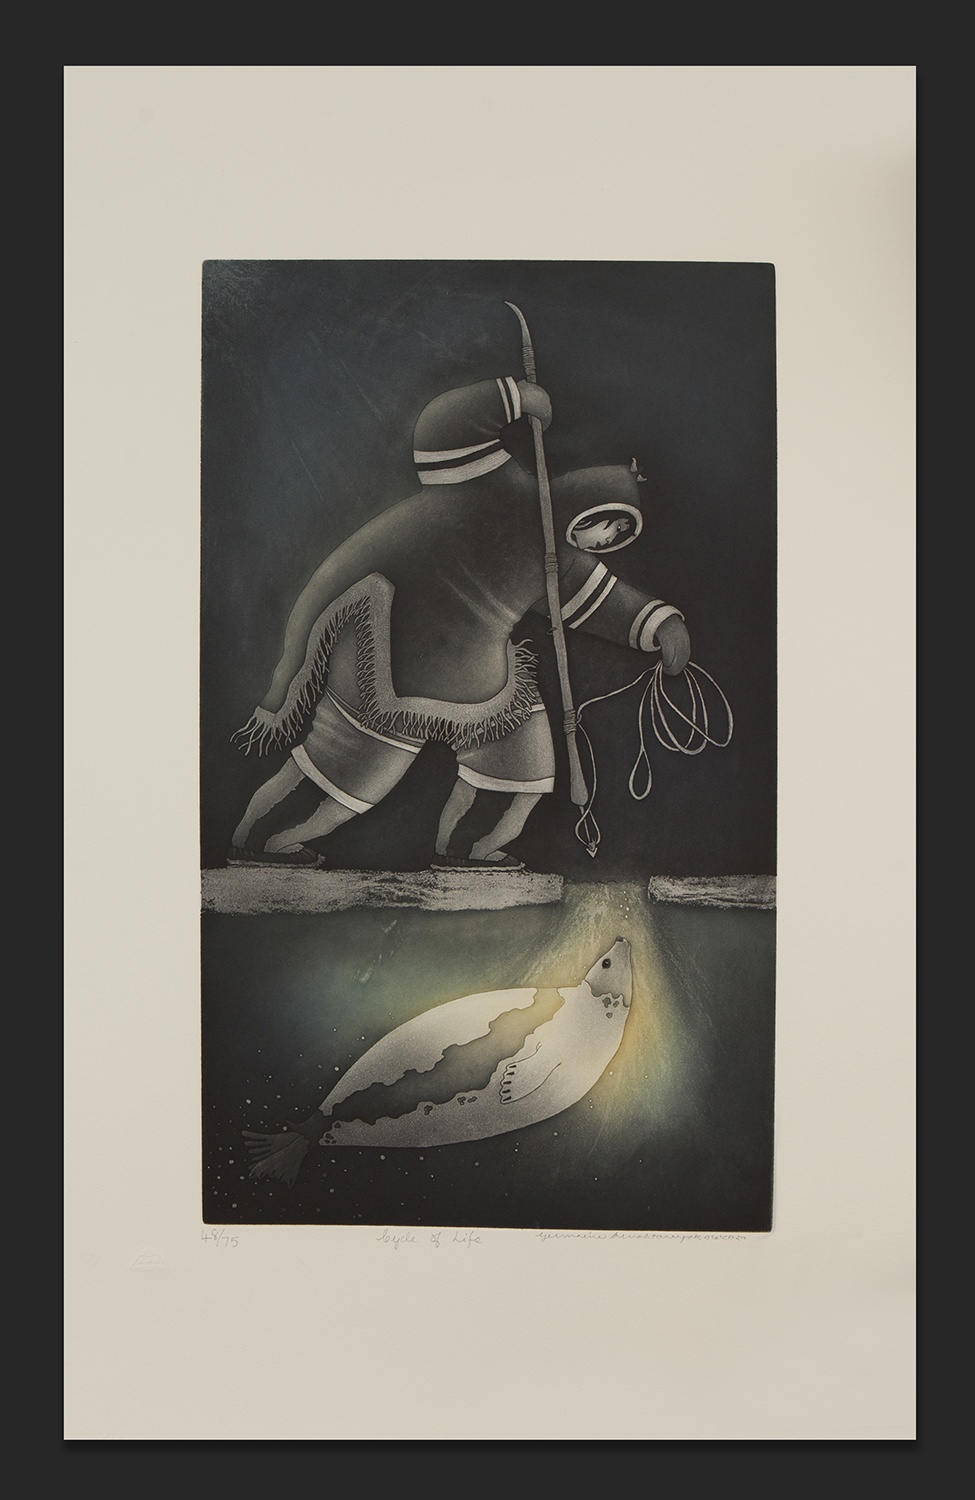 CYCLE OF LIFE Germaine Arnaktauyok Inuit 48/75 32” x 19” $1000